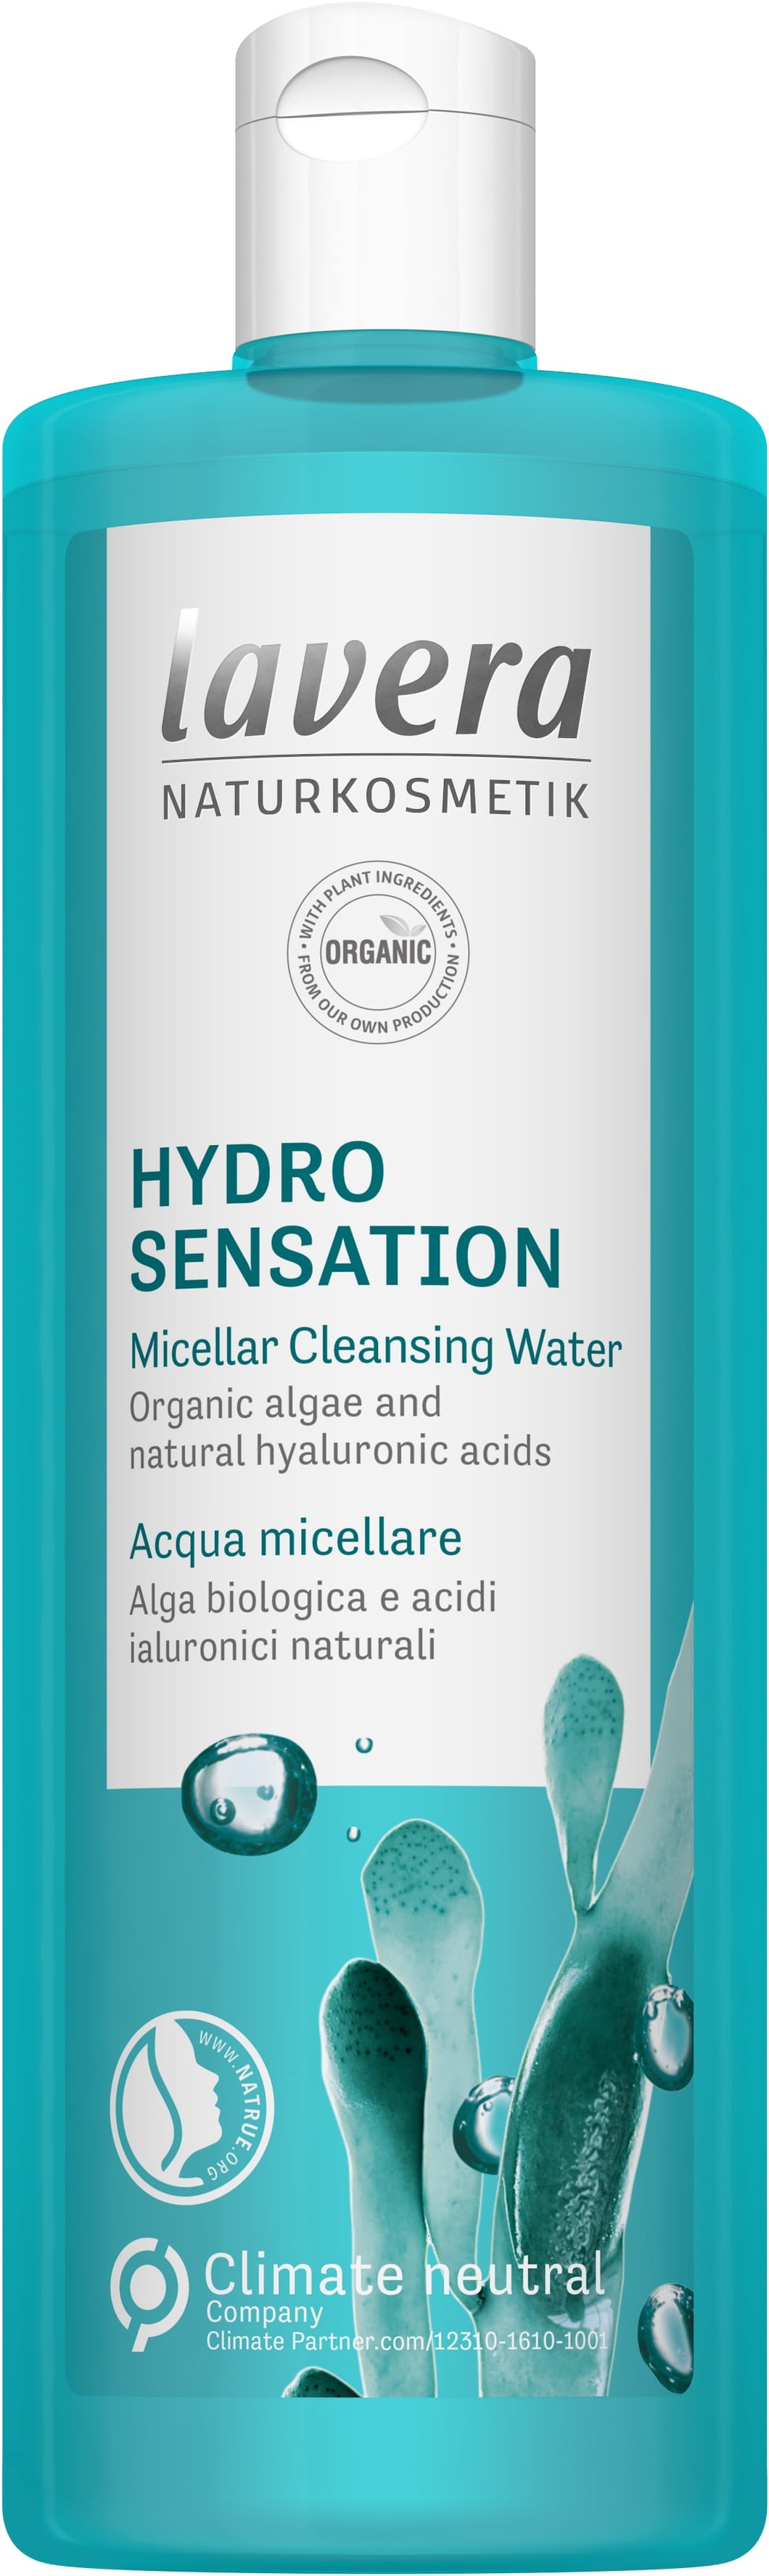 LAVERA NATURKOSMETIK - Hydro Sensation Micellar Cleansing Water 400 ml